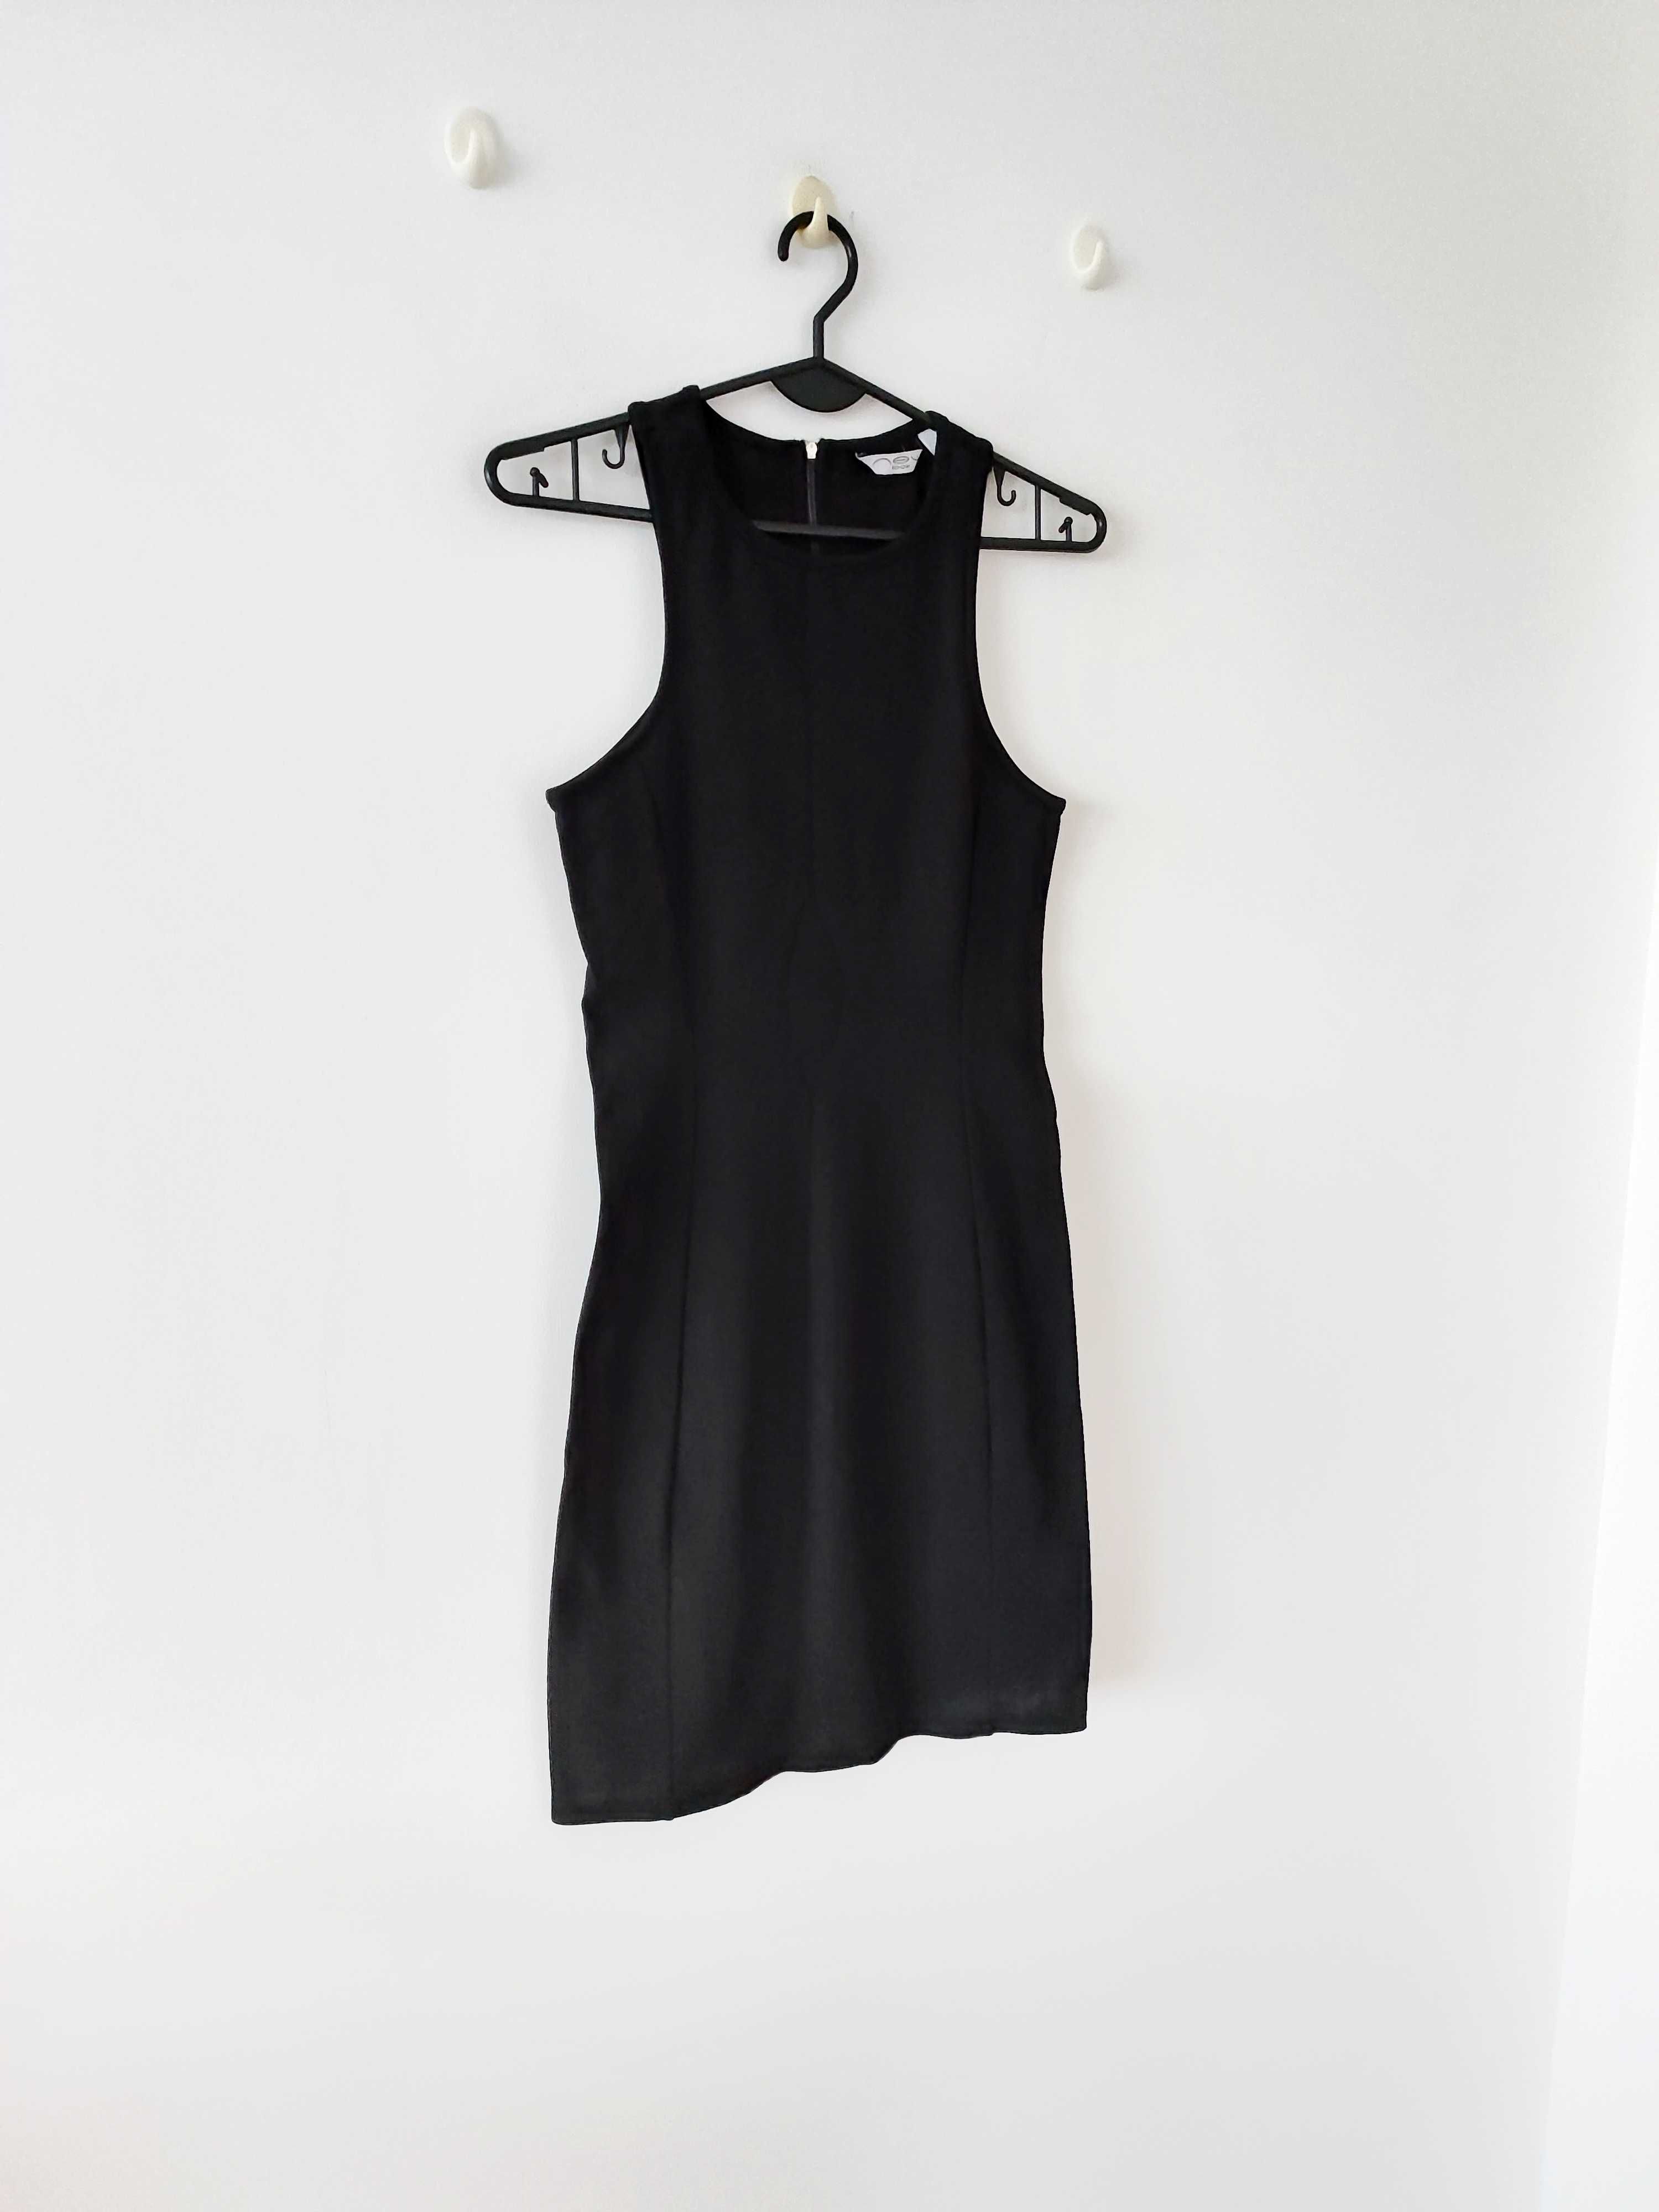 New Look mała Czarna dopasowana seksowna sukienka na sylwestra